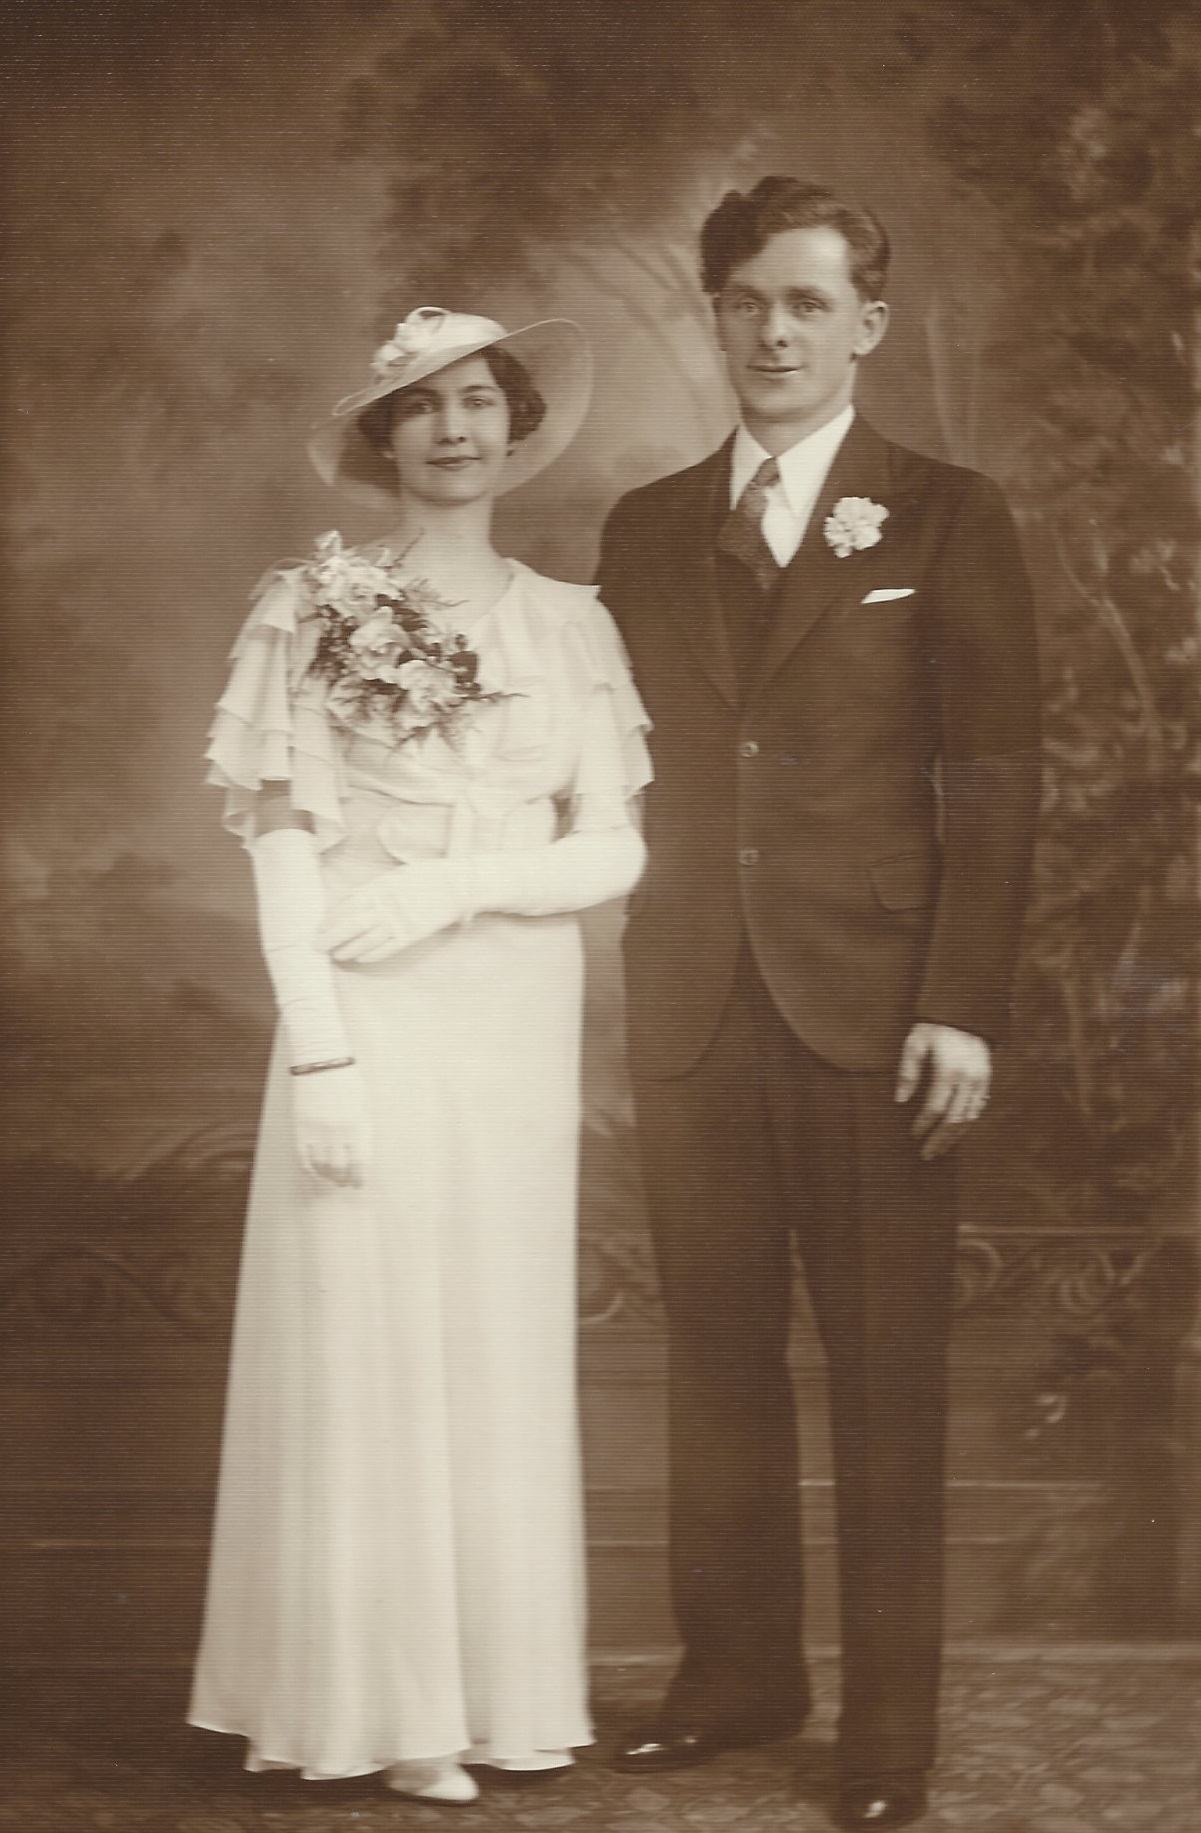 Farmors halvbror Alfred Åhlin (1908-1974) efter emigrationen till USA, här med det nya namnet Kenneth Ohlin och första hustrun Astrid Elizabeth Anderson.